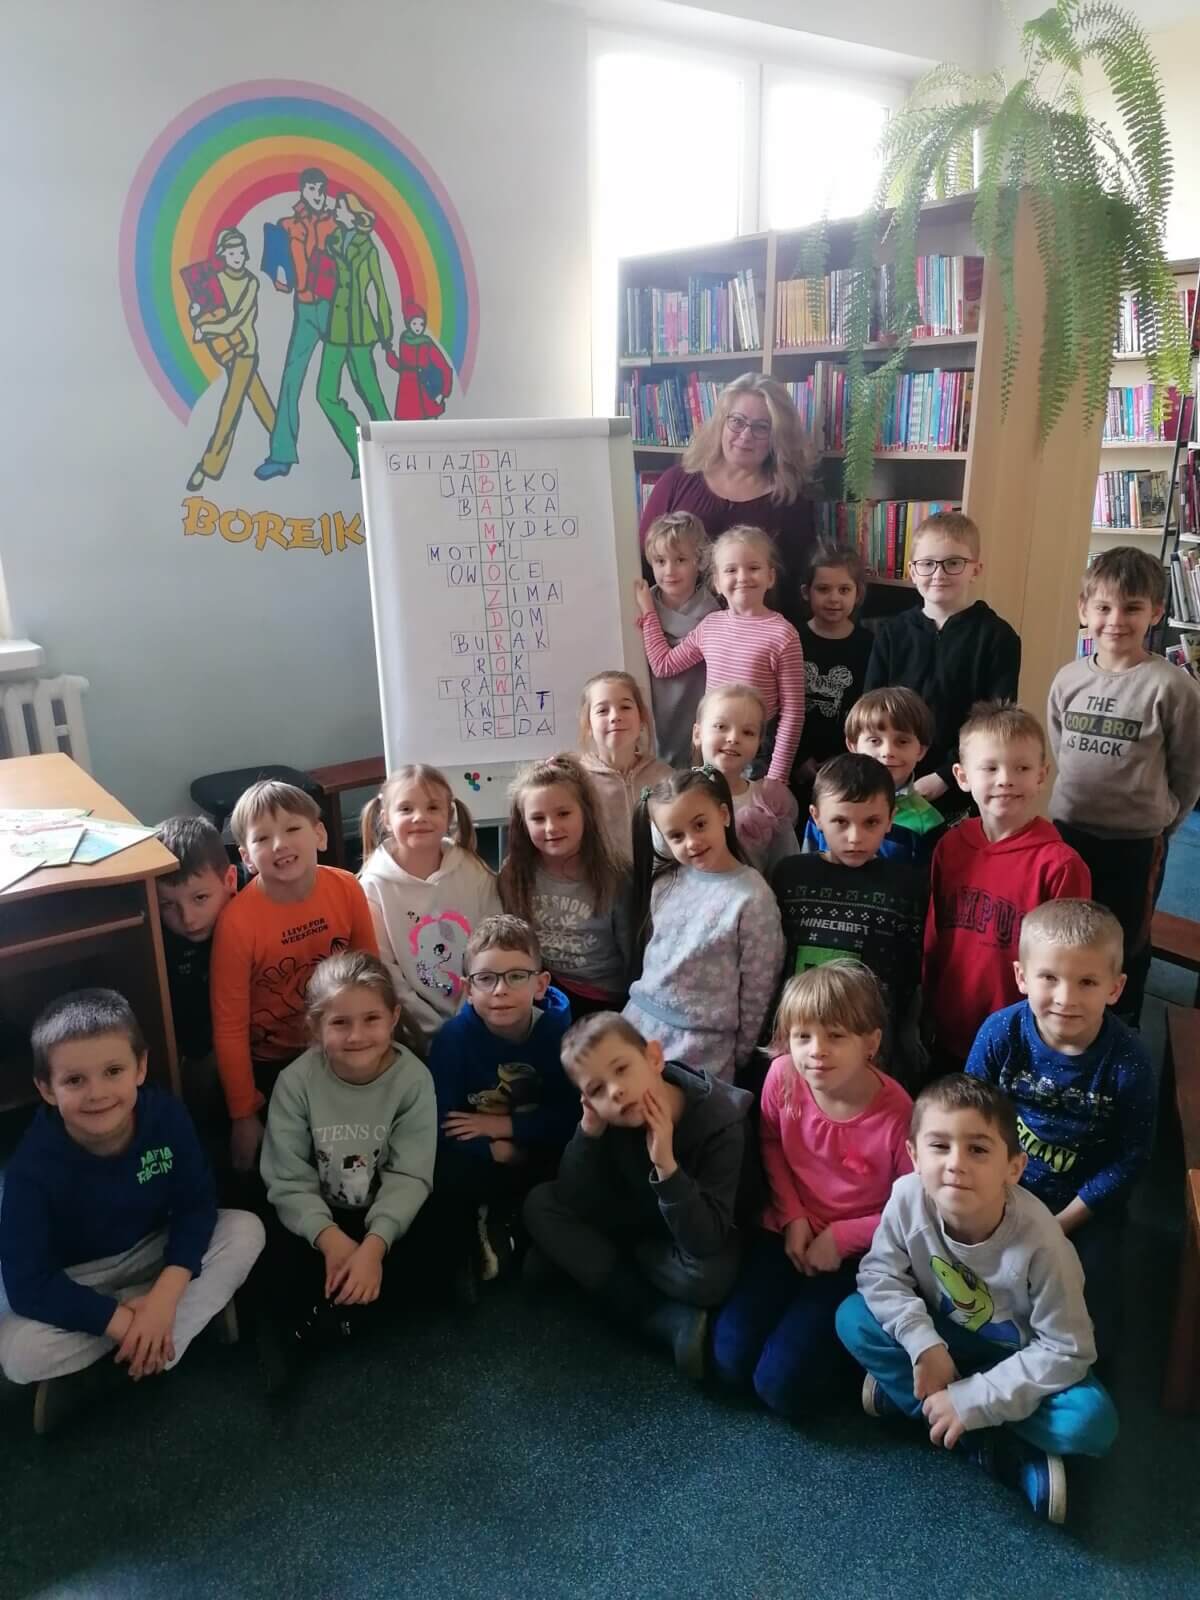 Grupa dzieci z osobą dorosłą na tle ściany z logo biblioteki „Borejkowo”, i regałów z książkami. Przy tablicy z rozwiązaną krzyżówką z hasłem „Dbajmy o zdrowie”.